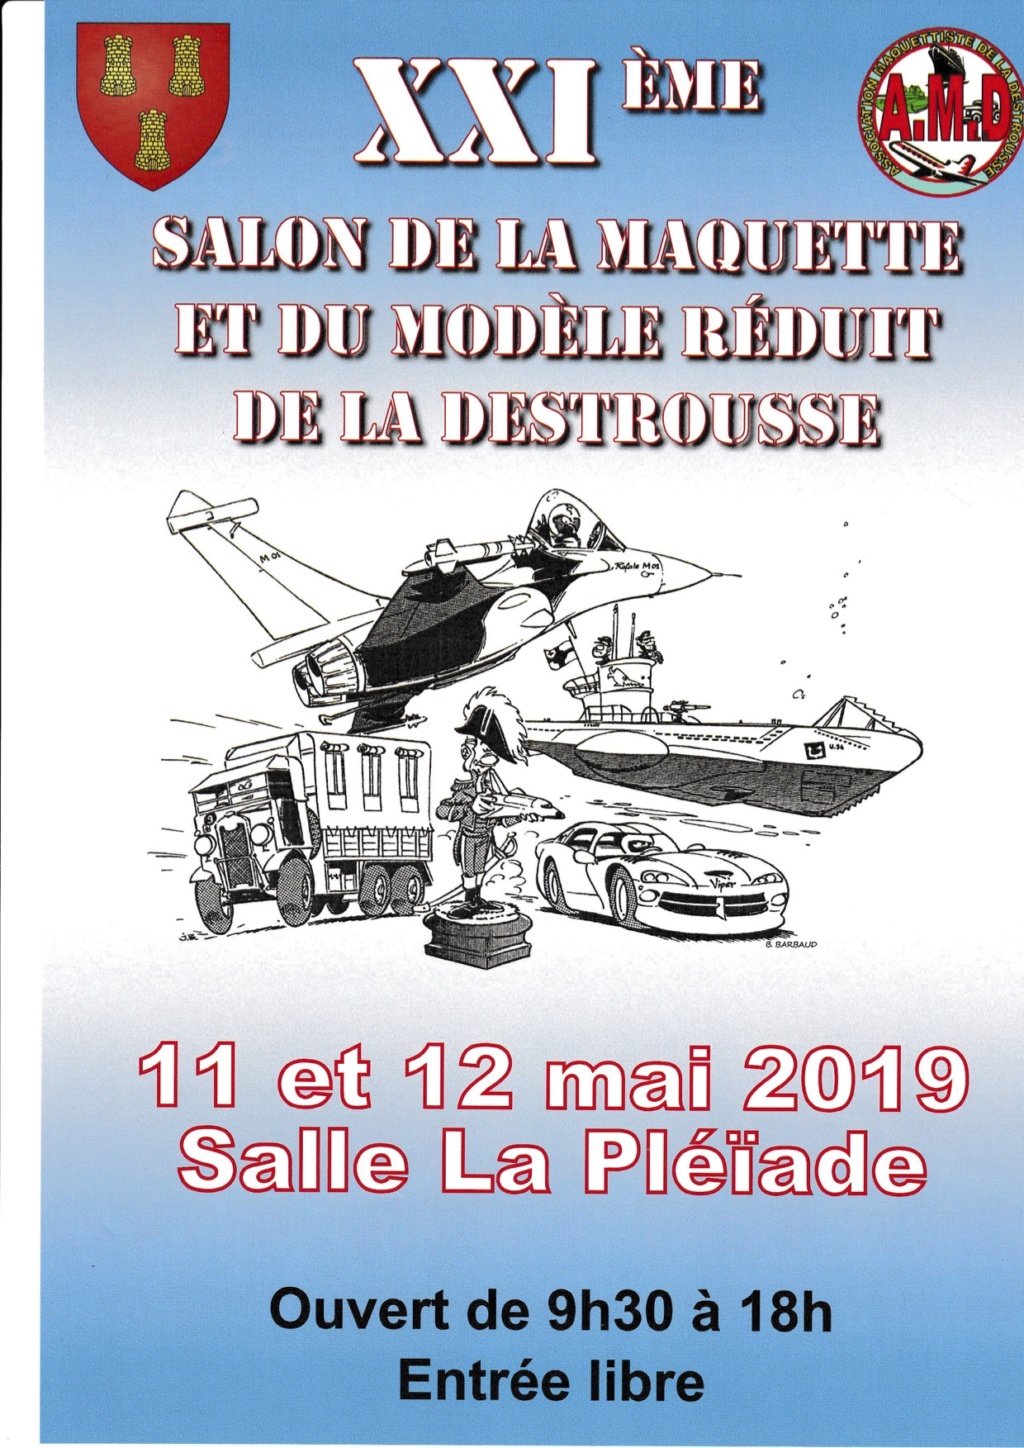 XXI ème Salon de la maquette à la Destrousse 11&12 mai 2019 Affich10